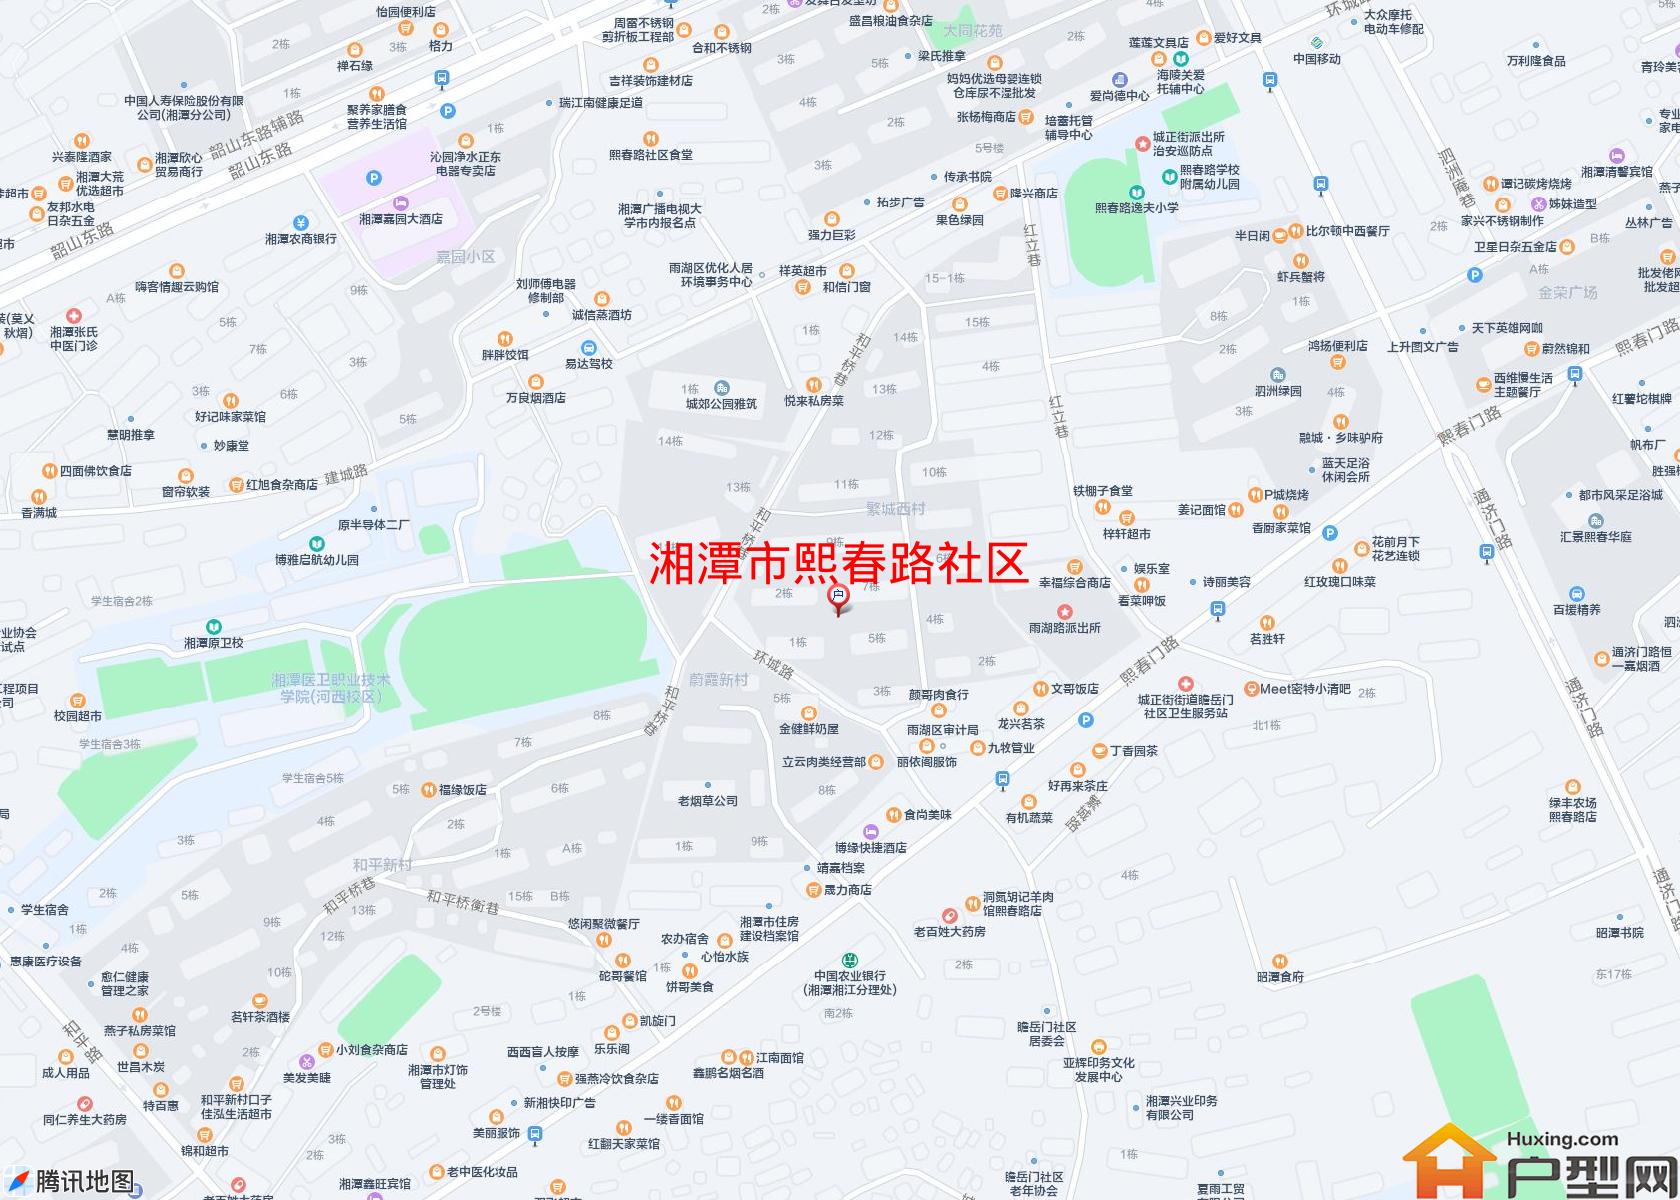 熙春路社区小区 - 户型网